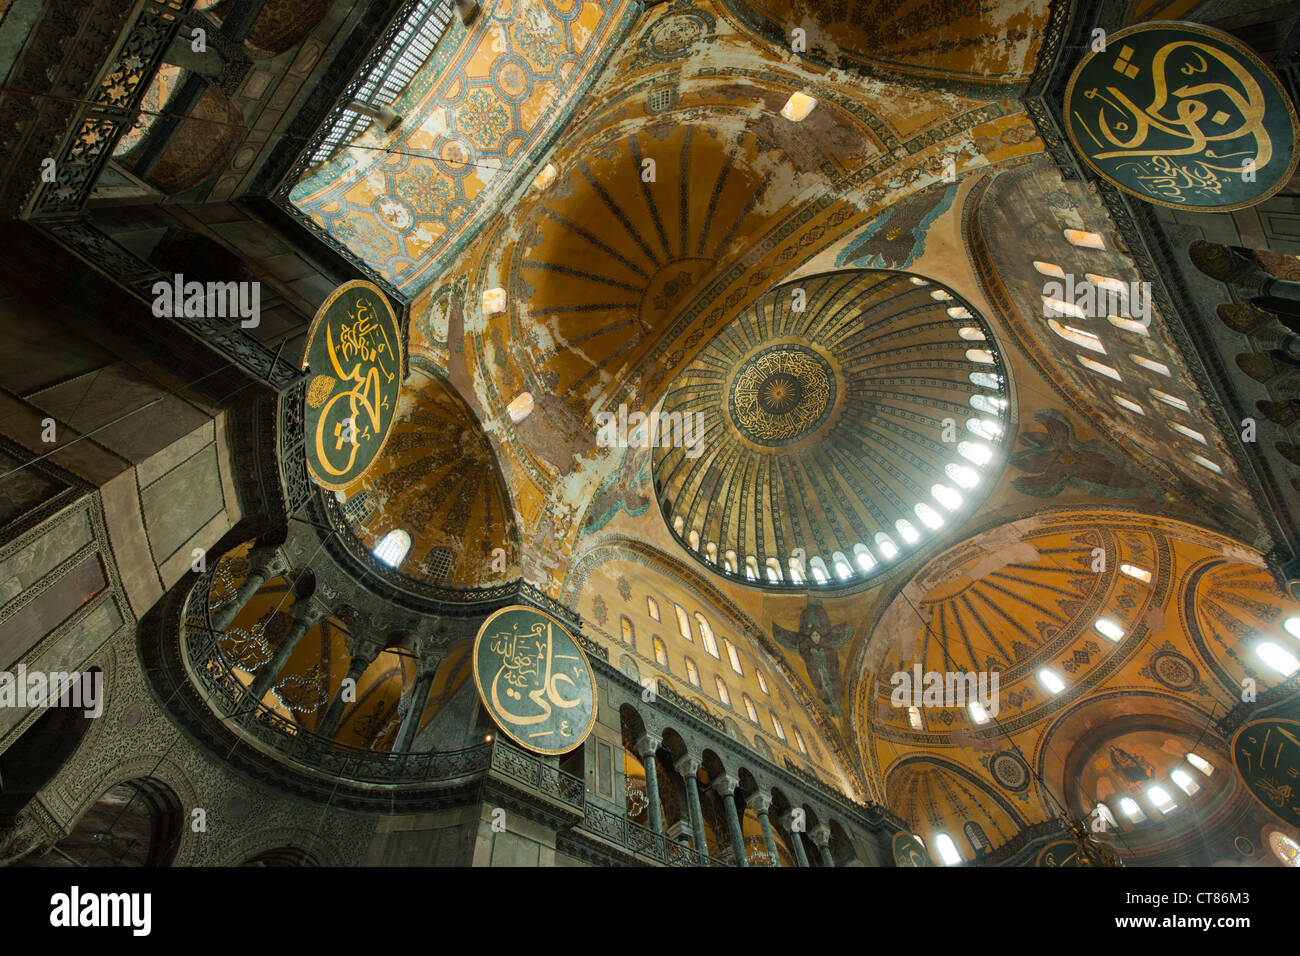 Türkei, Istanbul, Sultanahmet, Hagia Sophia oder Sophienkirche, eine ehemalige Kirche, spätere Moschee und heute ein Museum. Stock Photo